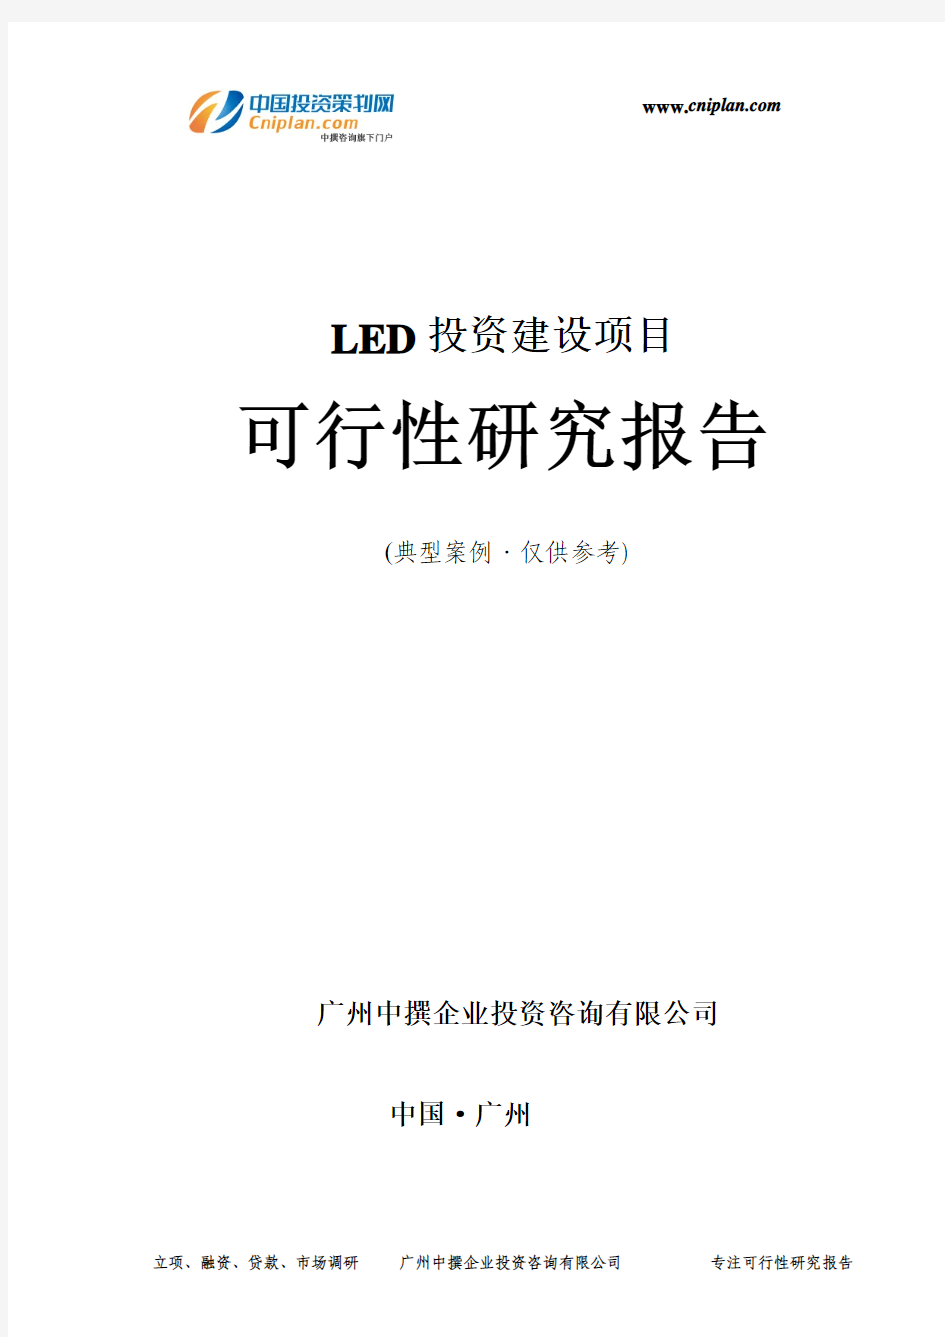 LED投资建设项目可行性研究报告-广州中撰咨询